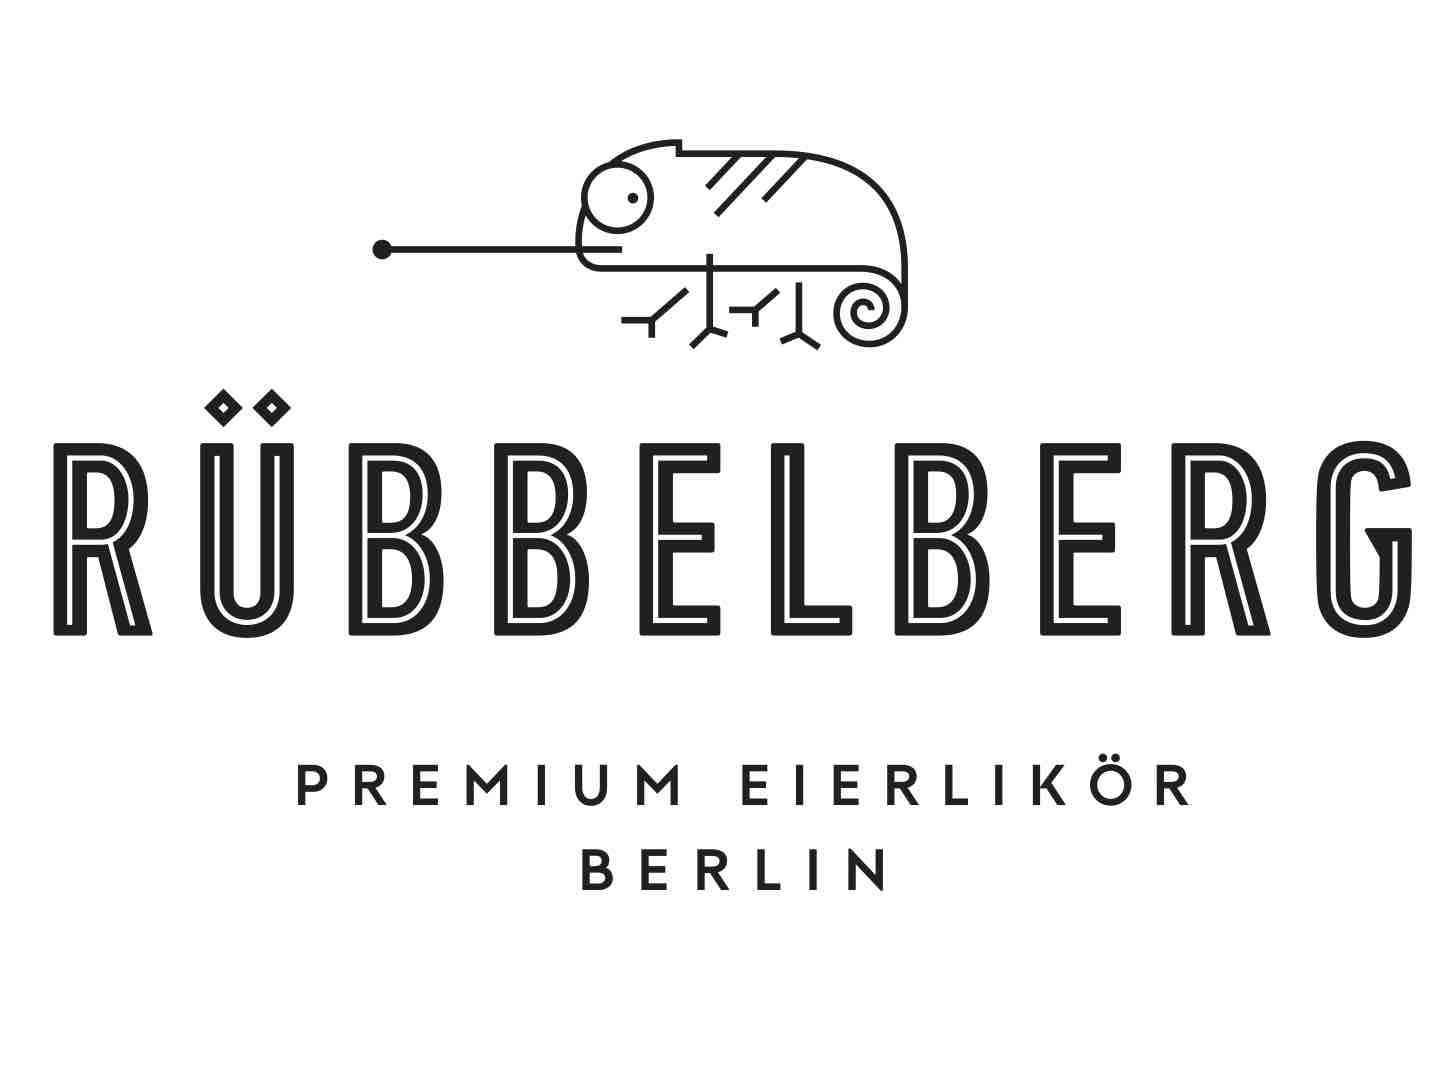 Rübbelberg